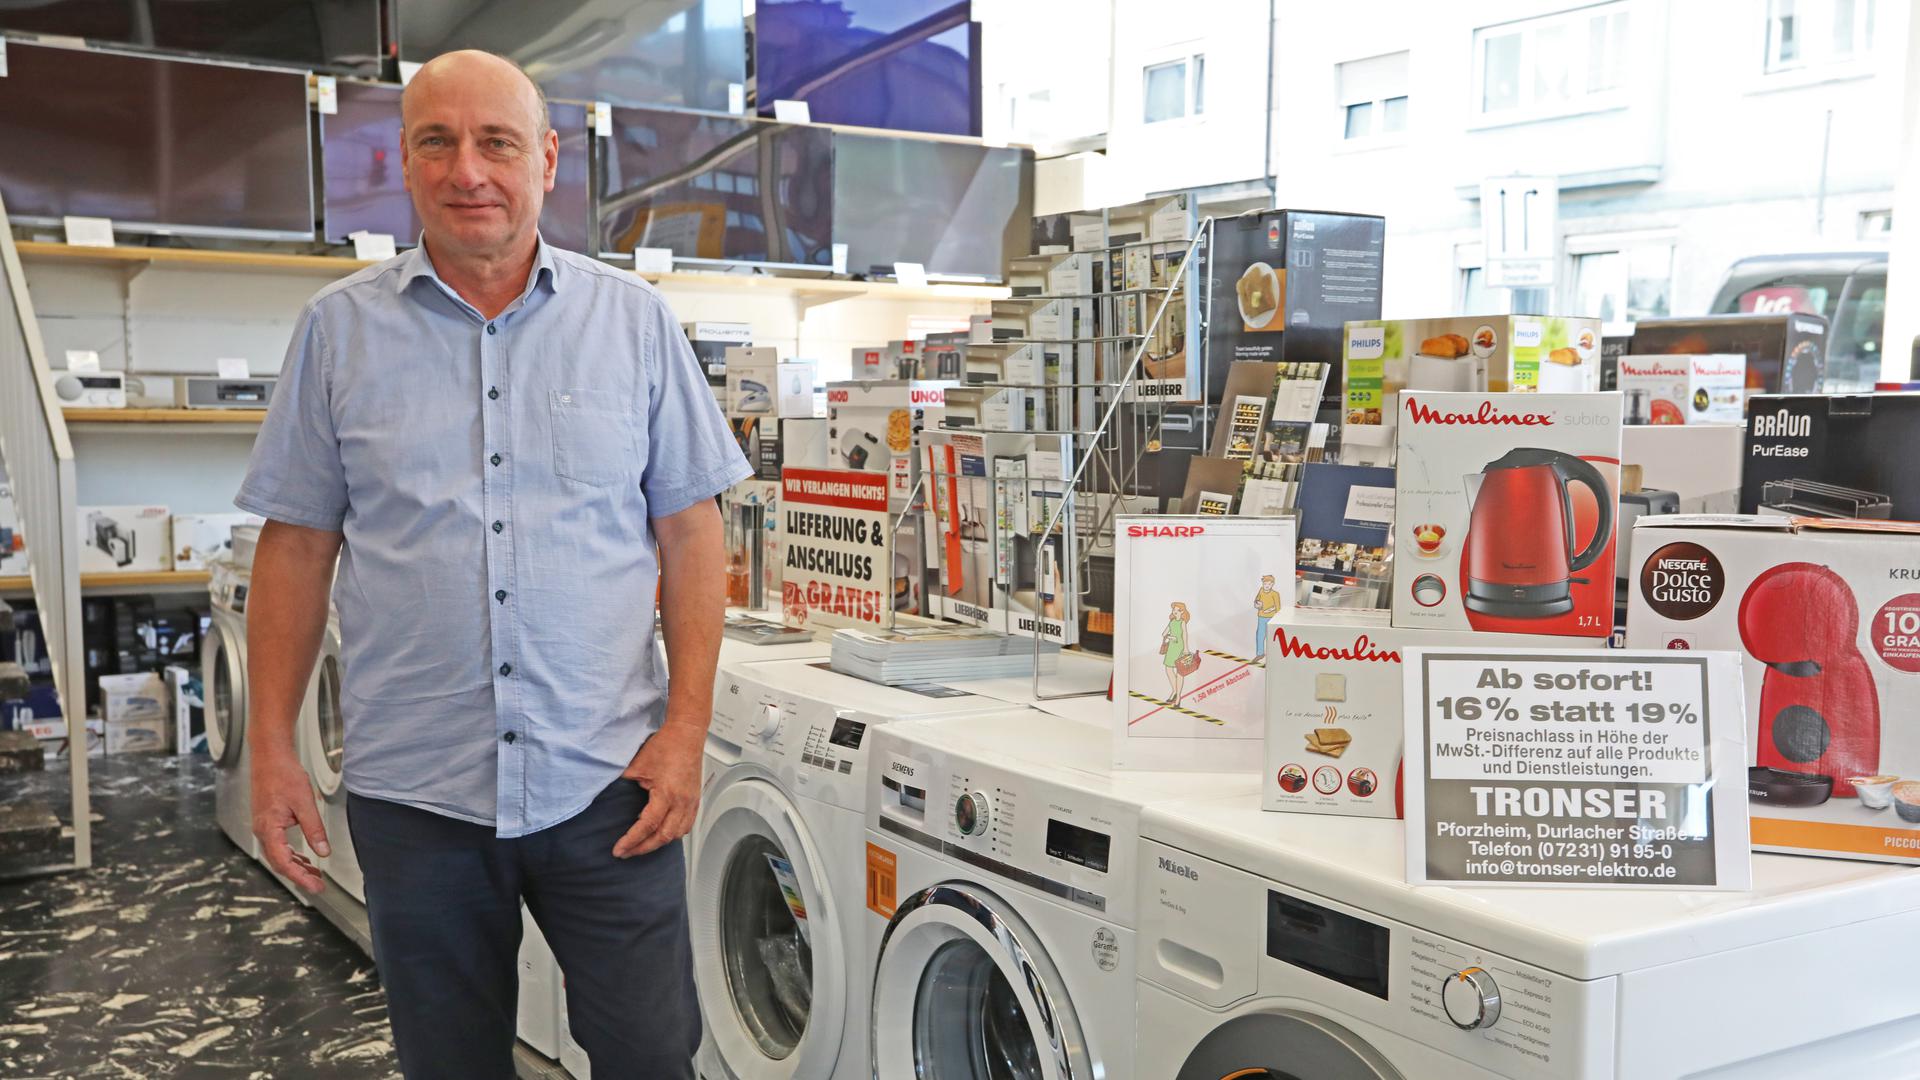 Bernhard Tronser steht im Elektrofachgeschäft vor Waschmaschinen. Rechts im Bild: ein Schild, das auf die Mehrwertsteuersenkung hinweist.